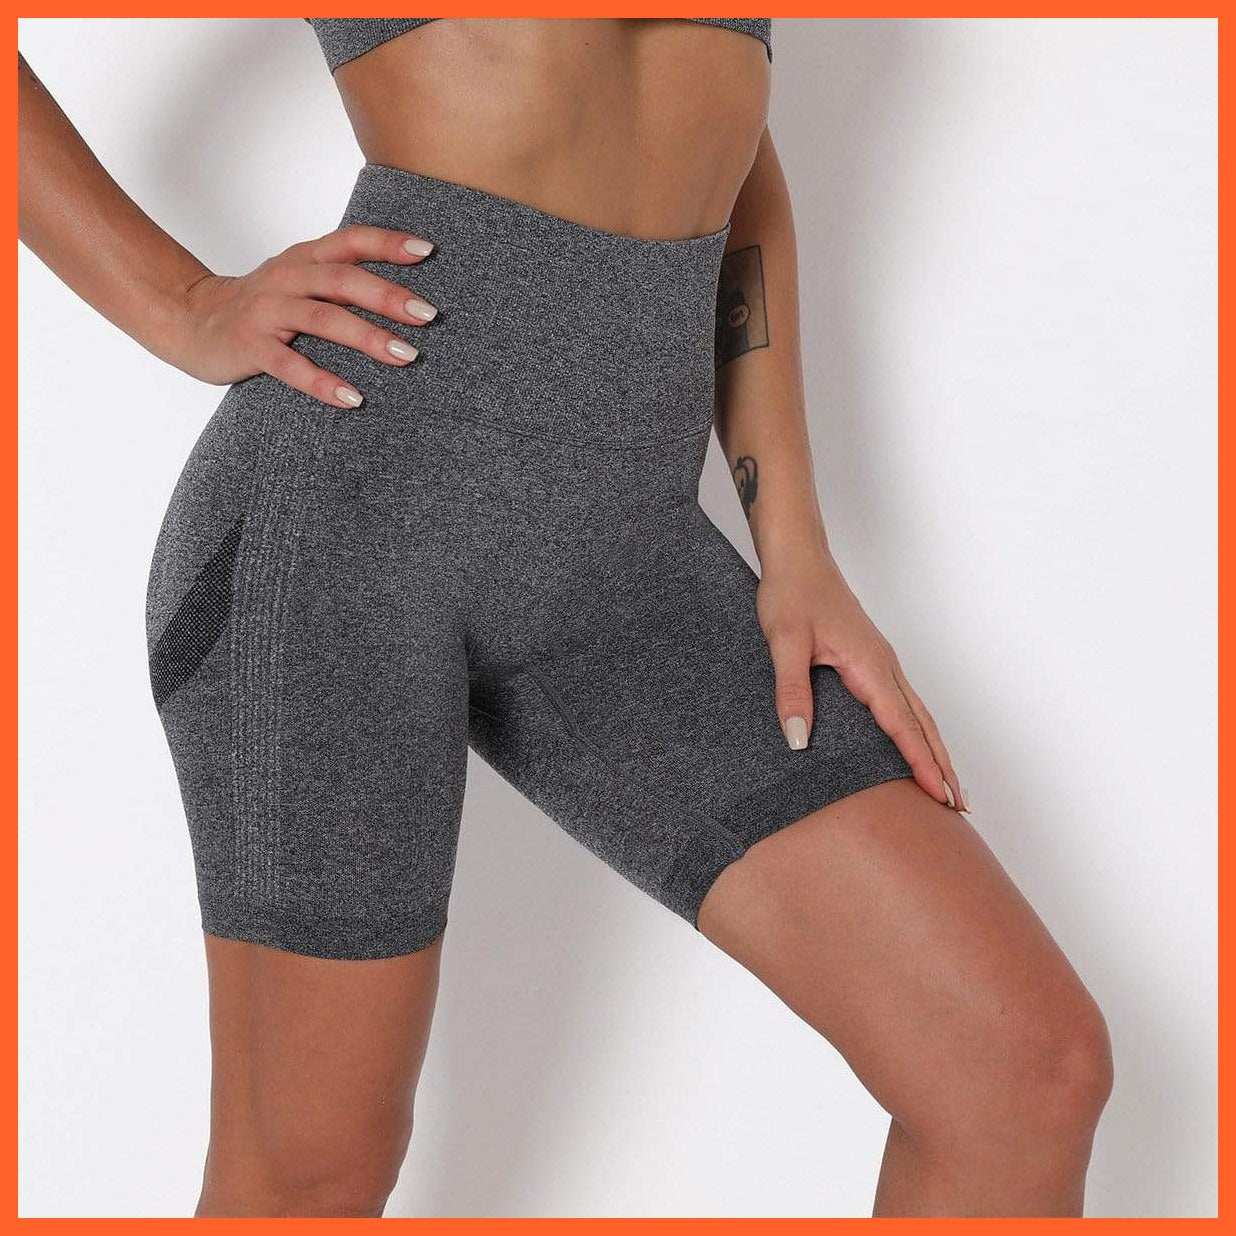 Lauren Lantechs Women Compression Exercise Shorts | Sportswear & Workout Shorts Activewear | whatagift.com.au.